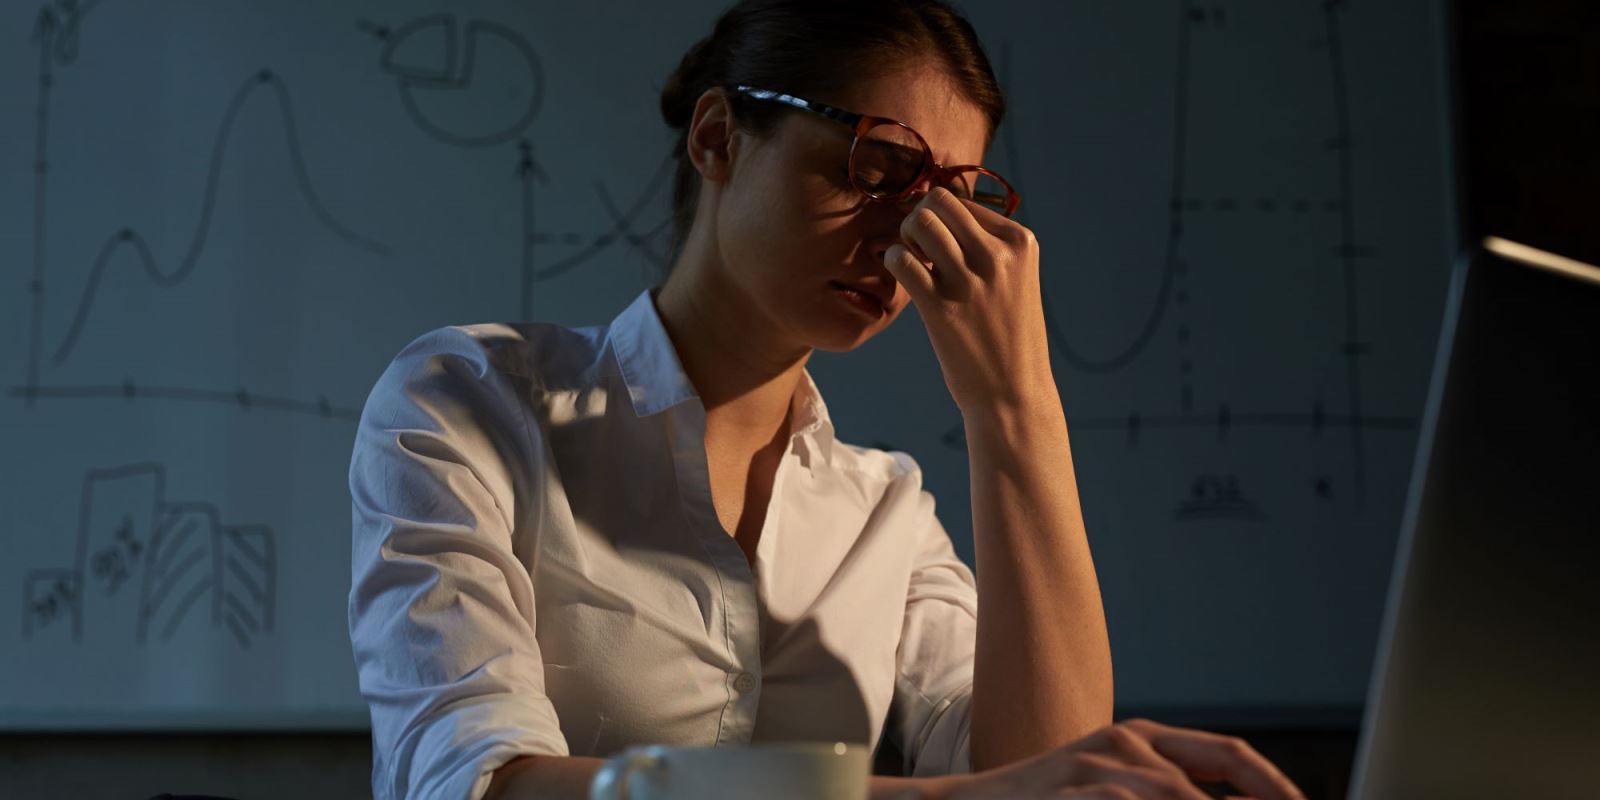 Εργαζόμενοι: «Αποσυνδεθείτε» από τη δουλειά χωρίς άγχος με 4 απλά βήματα